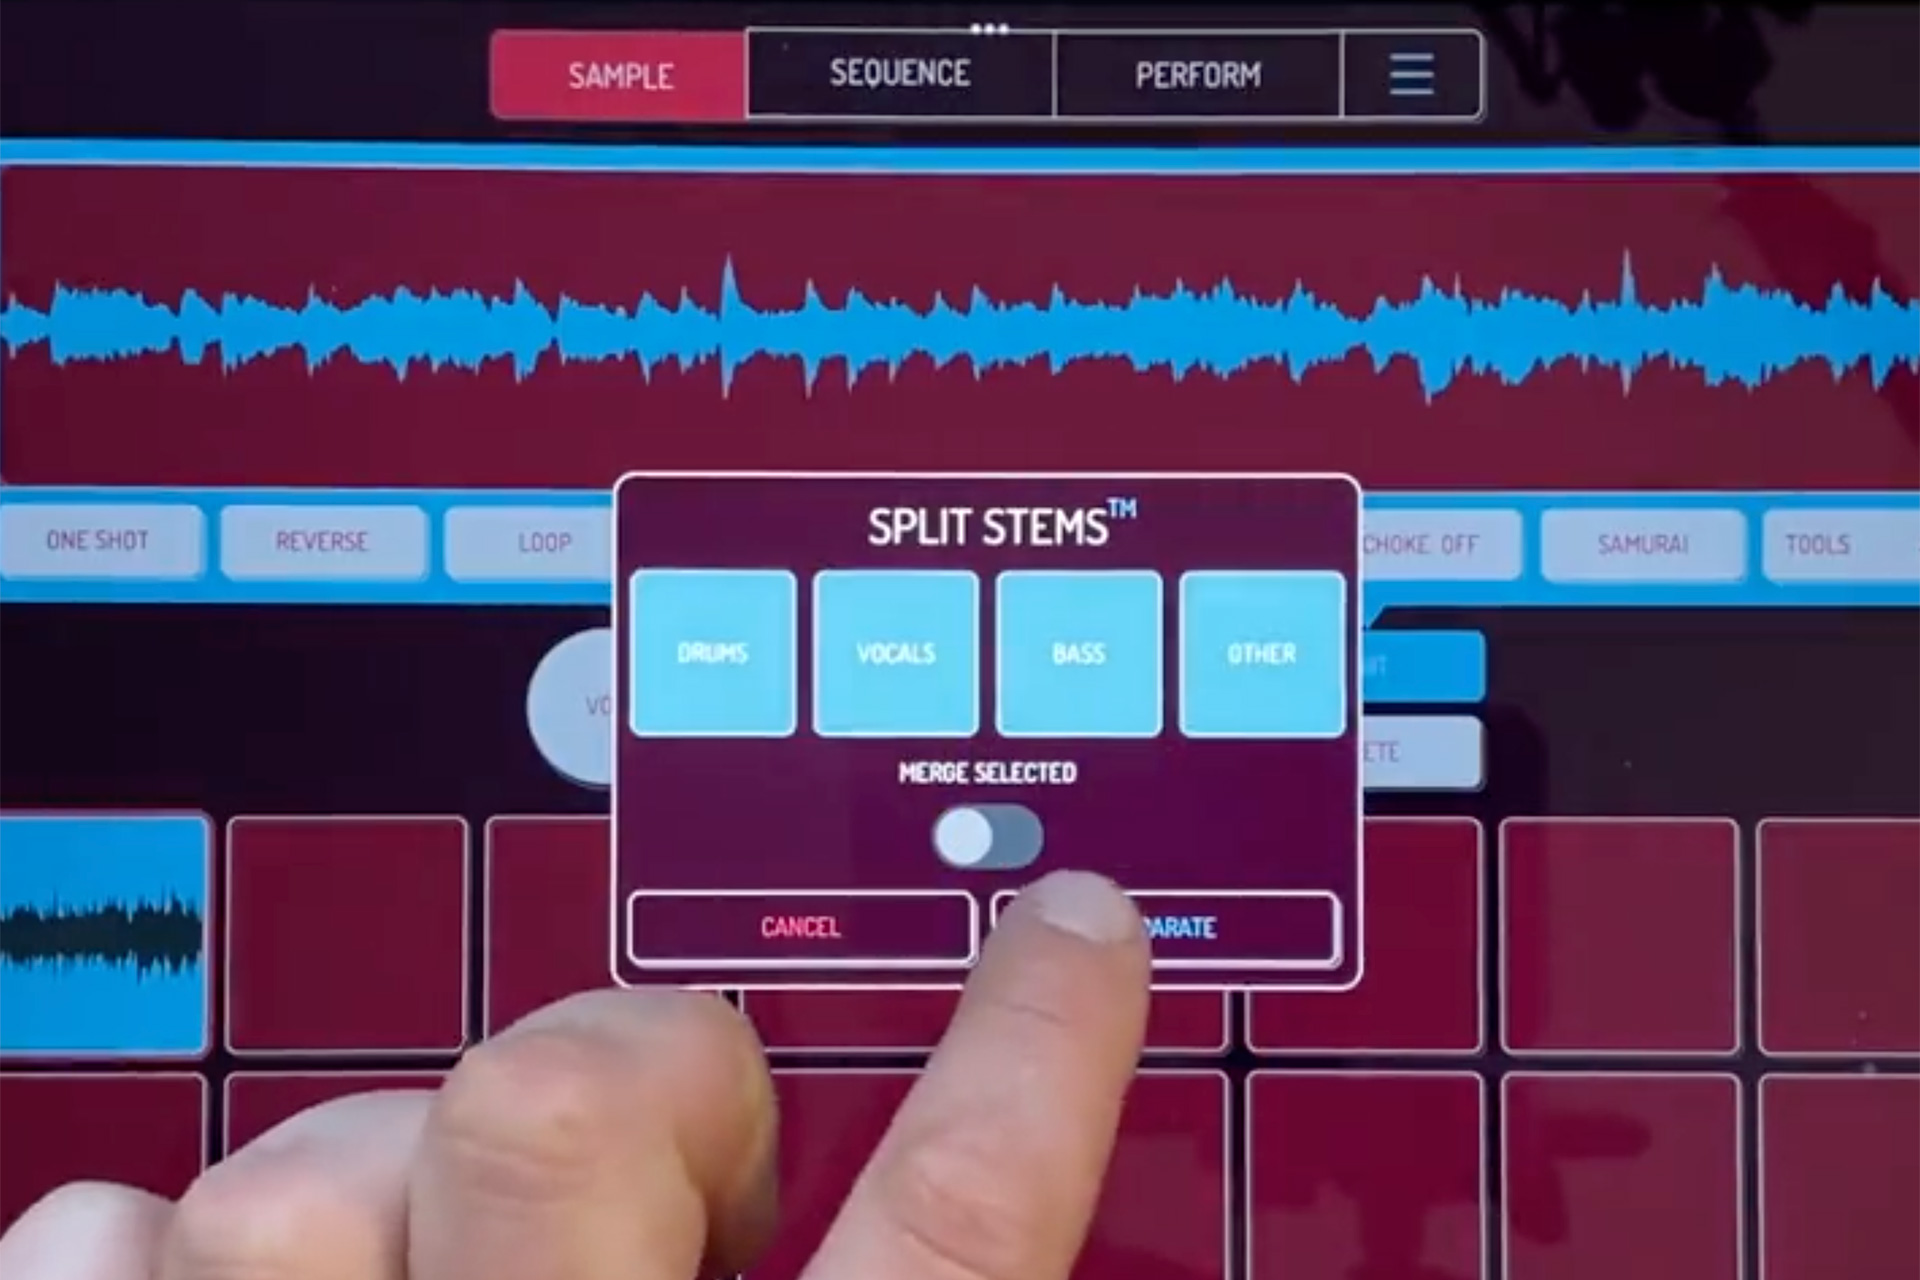 Koala Sampler hiện sử dụng AI để tự động tạo các đoạn nhạc